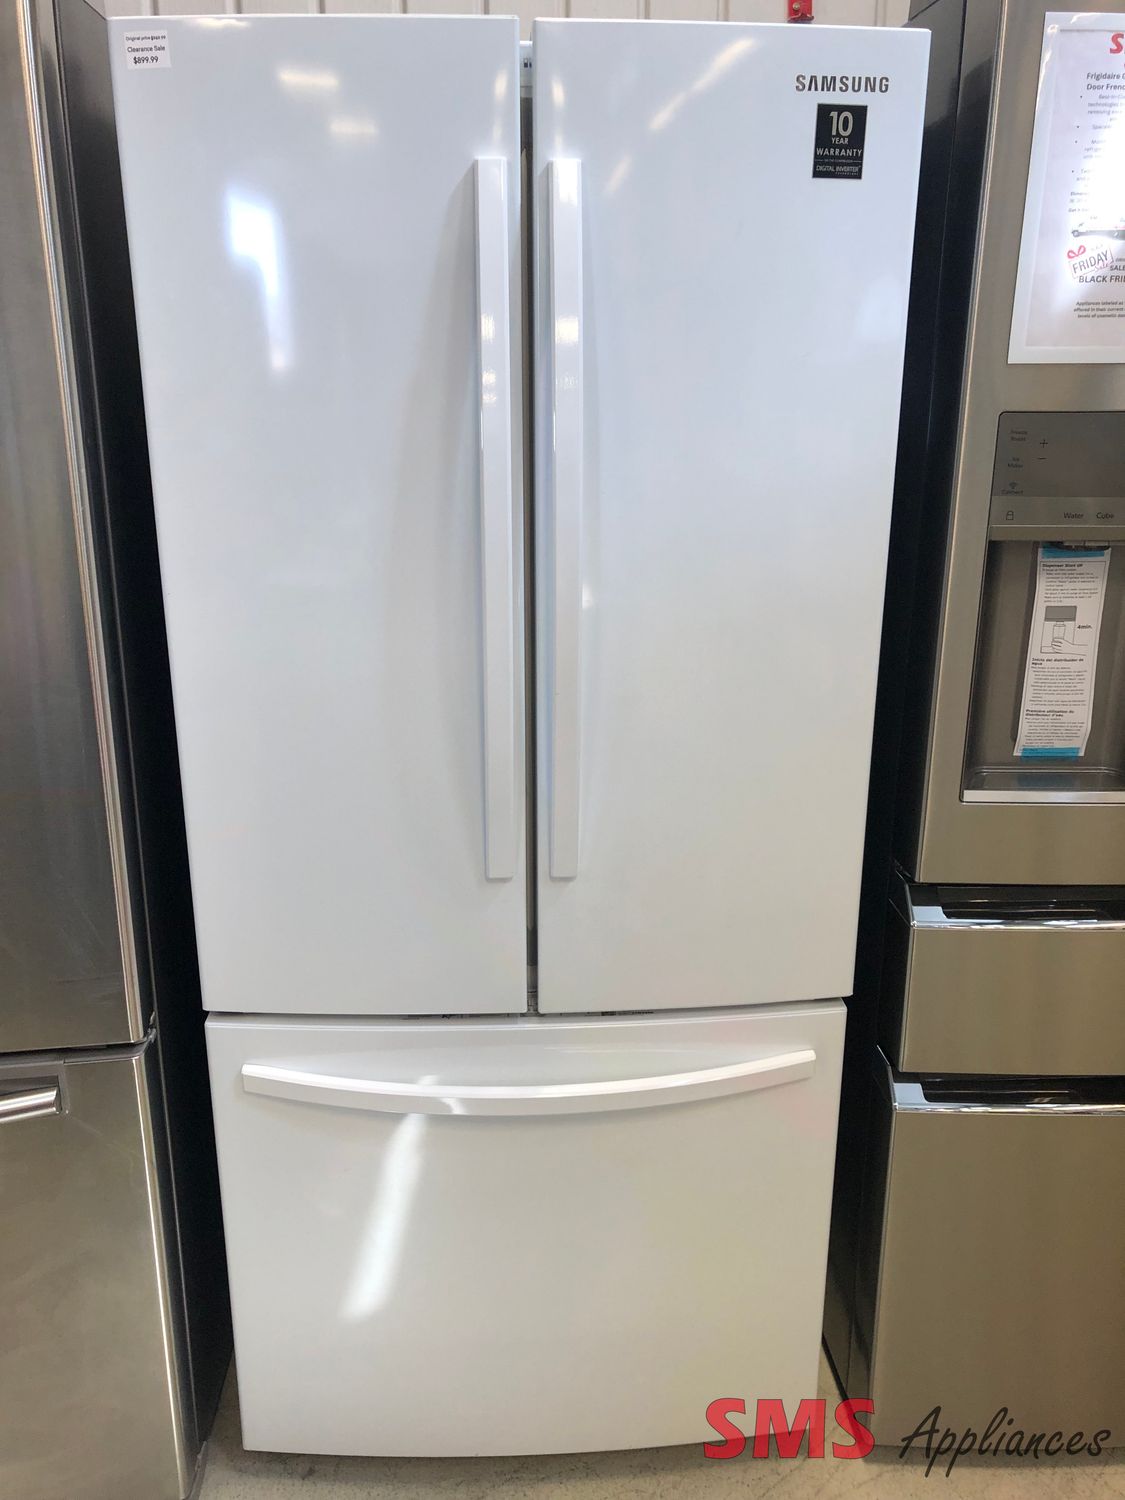 Samsung 30" French Door Refrigerator 21.8 Cu. Ft. RF220NFTAWW